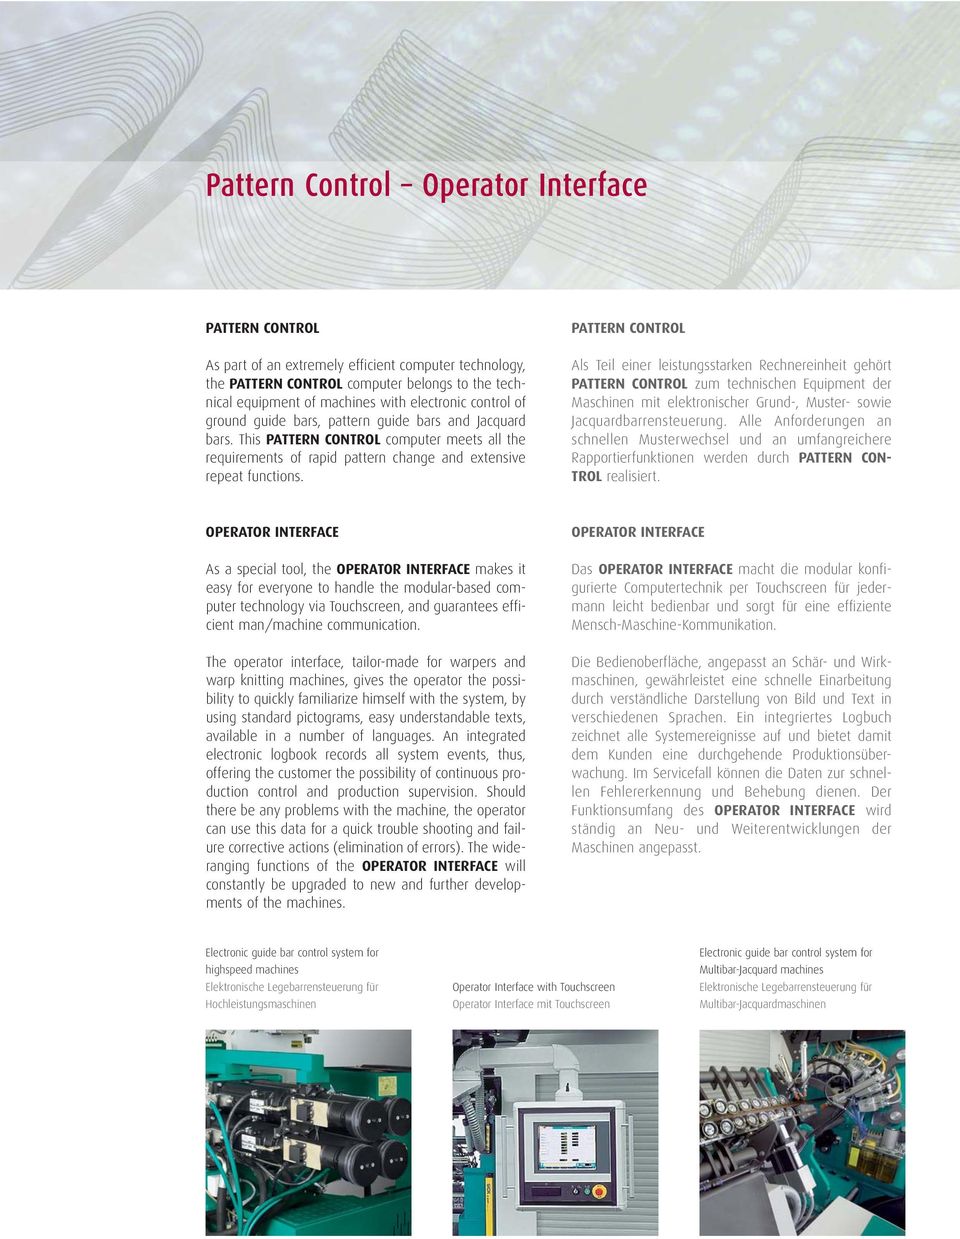 PATTERN CONTROL Als Teil einer leistungsstarken Rechnereinheit gehört PATTERN CONTROL zum technischen Equipment der Maschinen mit elektronischer Grund-, Muster- sowie Jacquardbarrensteuerung.